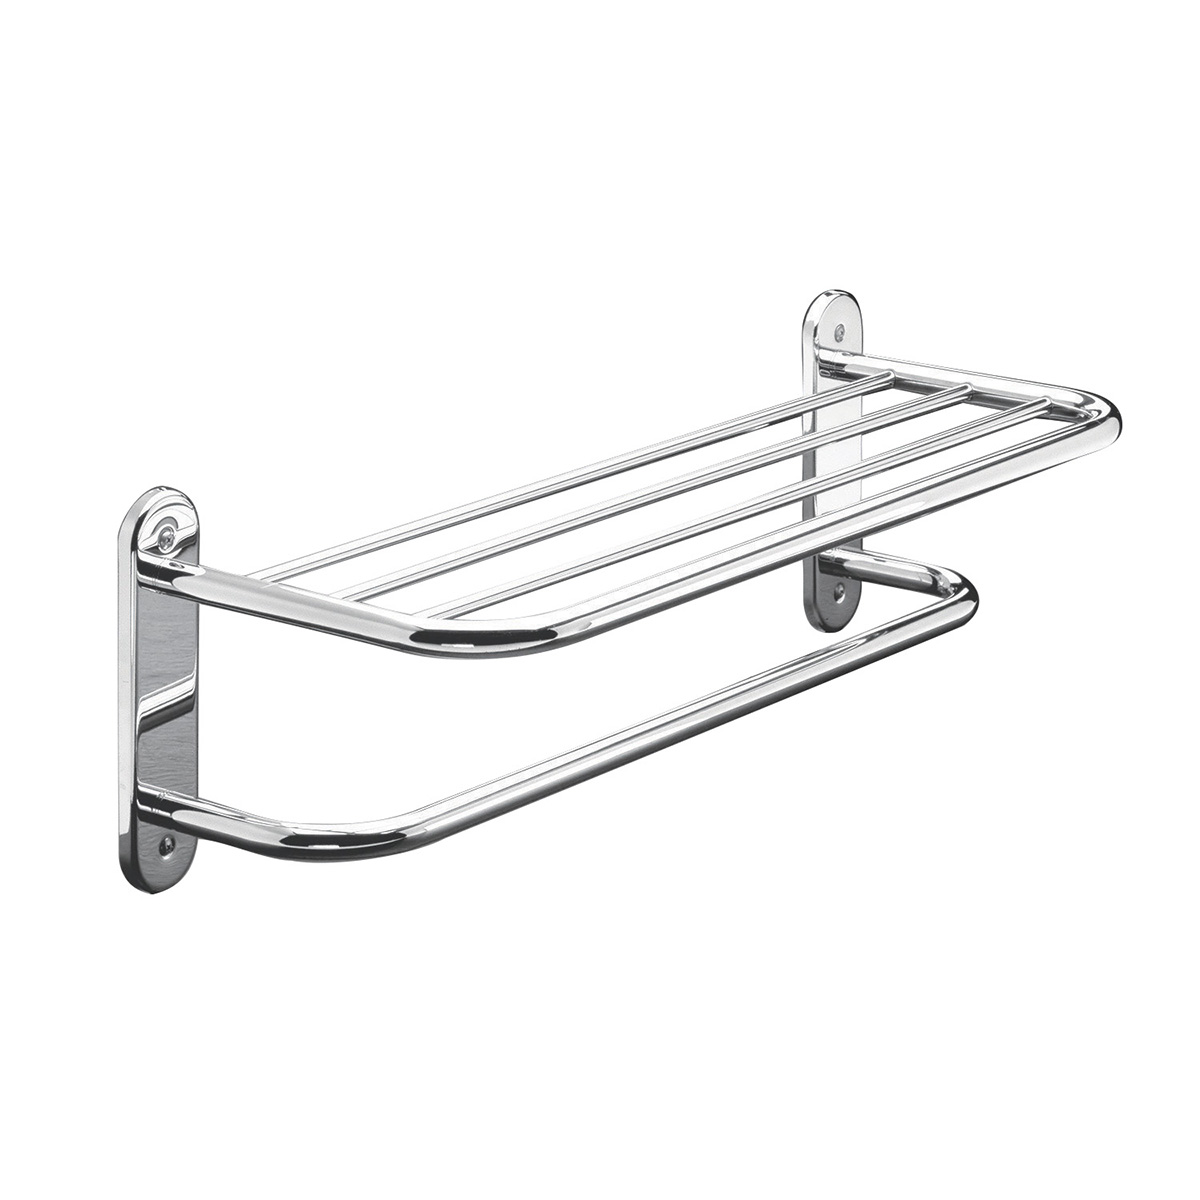 Towel Shelves - Towel Shelf With Bar - 3 4 Frame Tubing - Polished Chrome